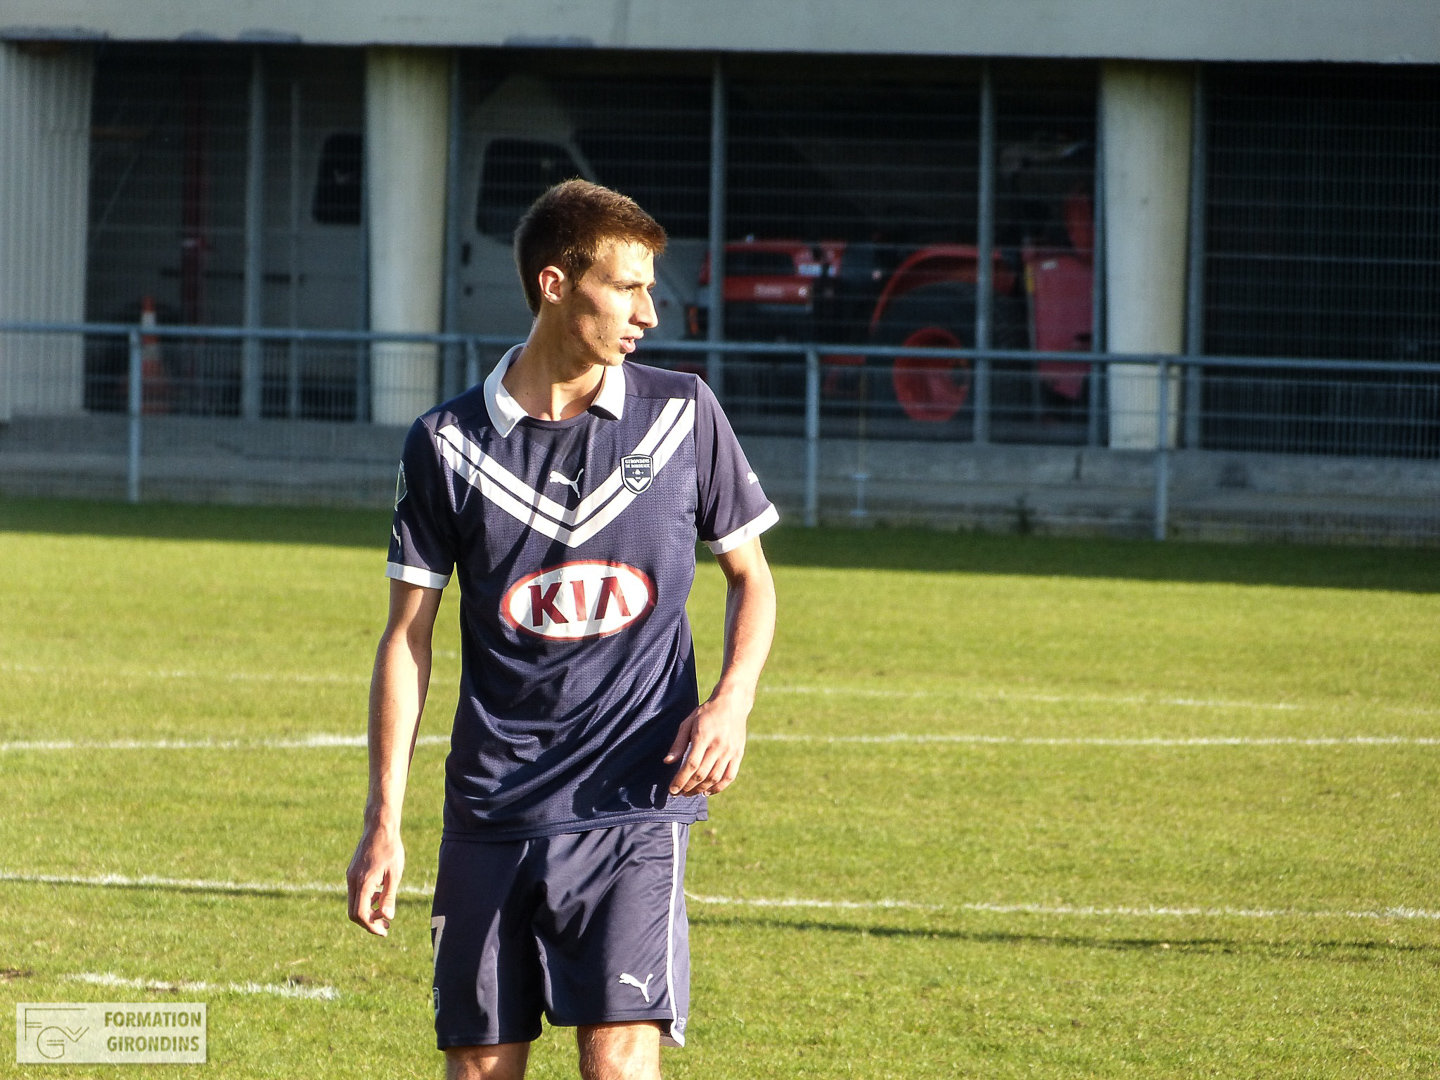 Actualités : Des nouvelles de Maxime Darrieux, de retour dans le foot - Formation Girondins 